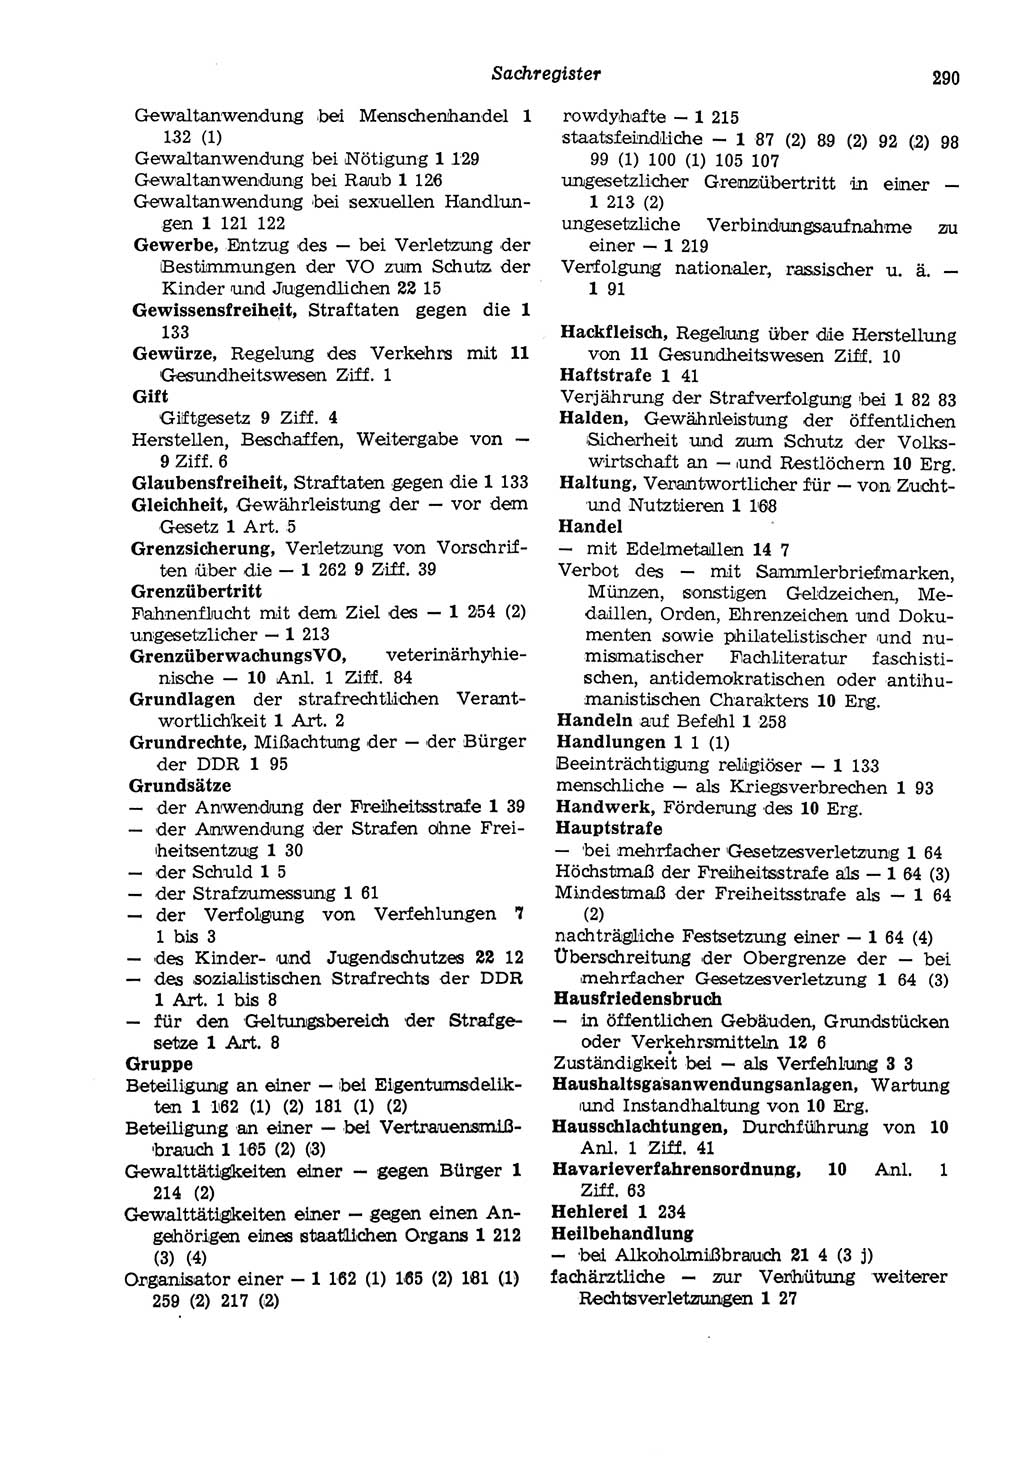 Strafgesetzbuch (StGB) der Deutschen Demokratischen Republik (DDR) und angrenzende Gesetze und Bestimmungen 1975, Seite 290 (StGB DDR Ges. Best. 1975, S. 290)